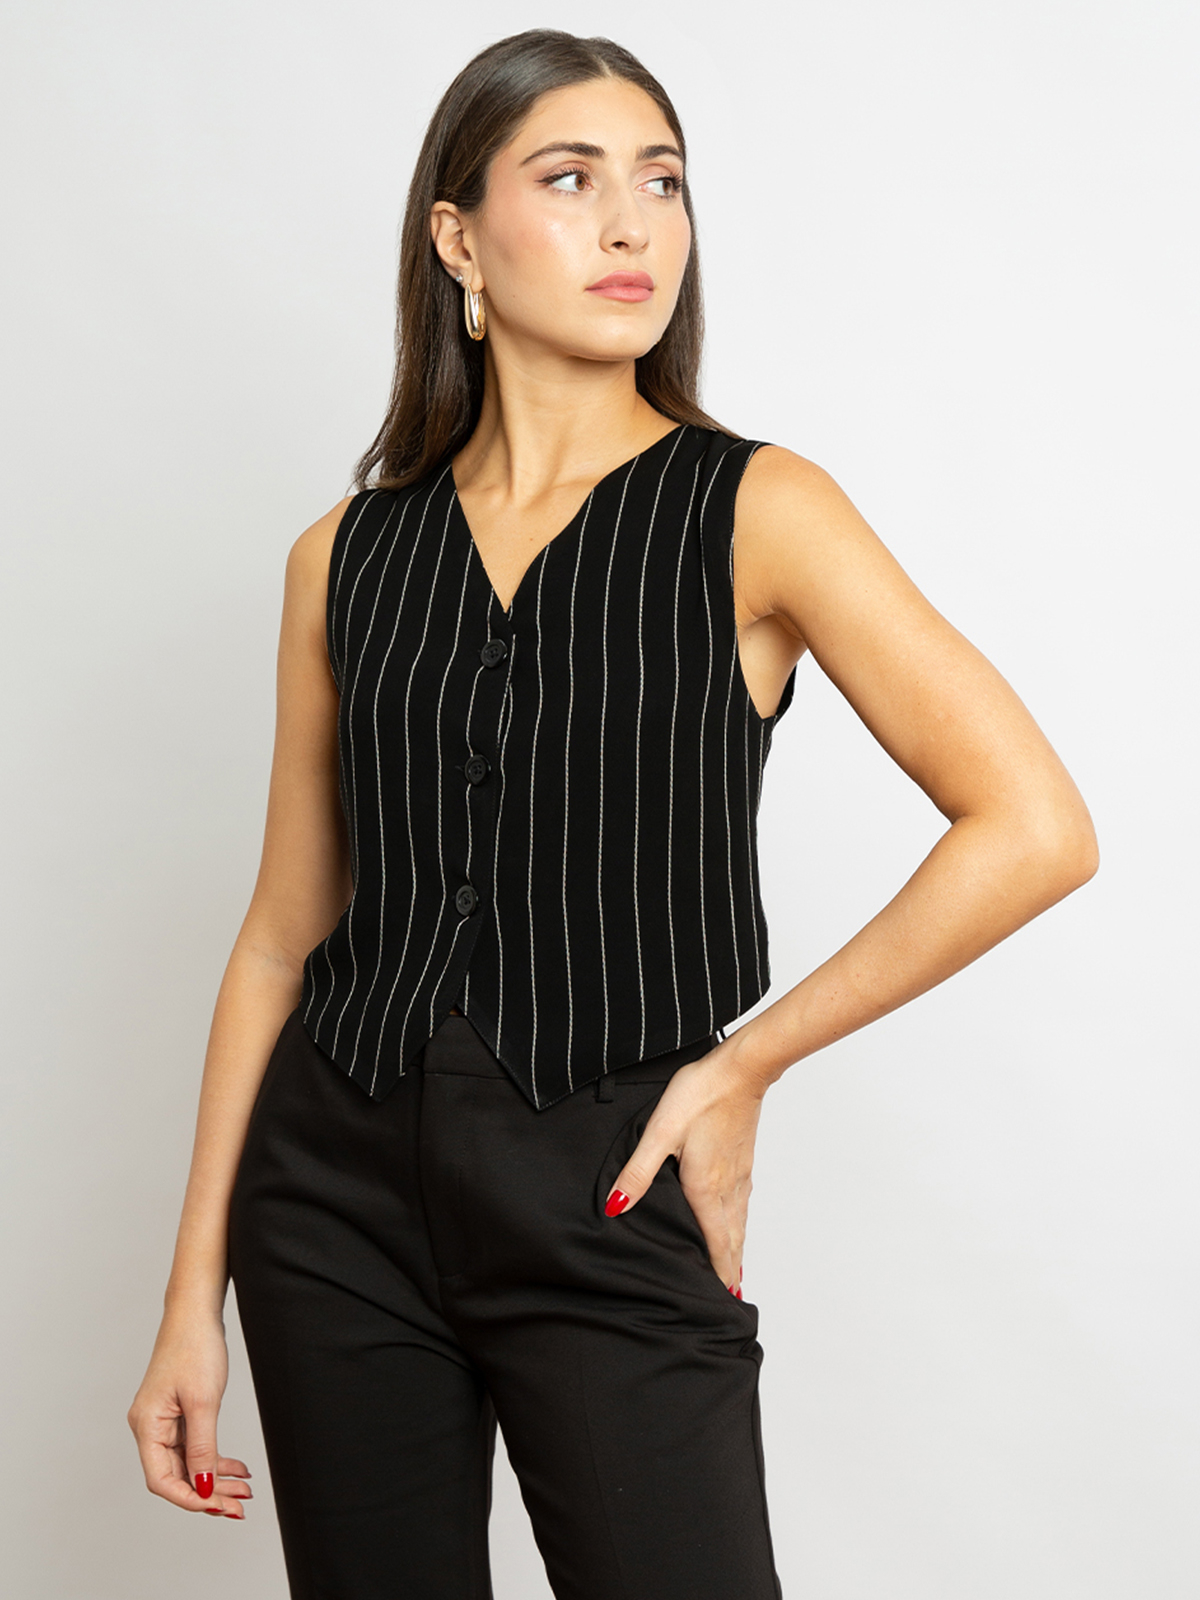 Formal v neck under abaya vest striped black color regular fit cut for formal meetings and events